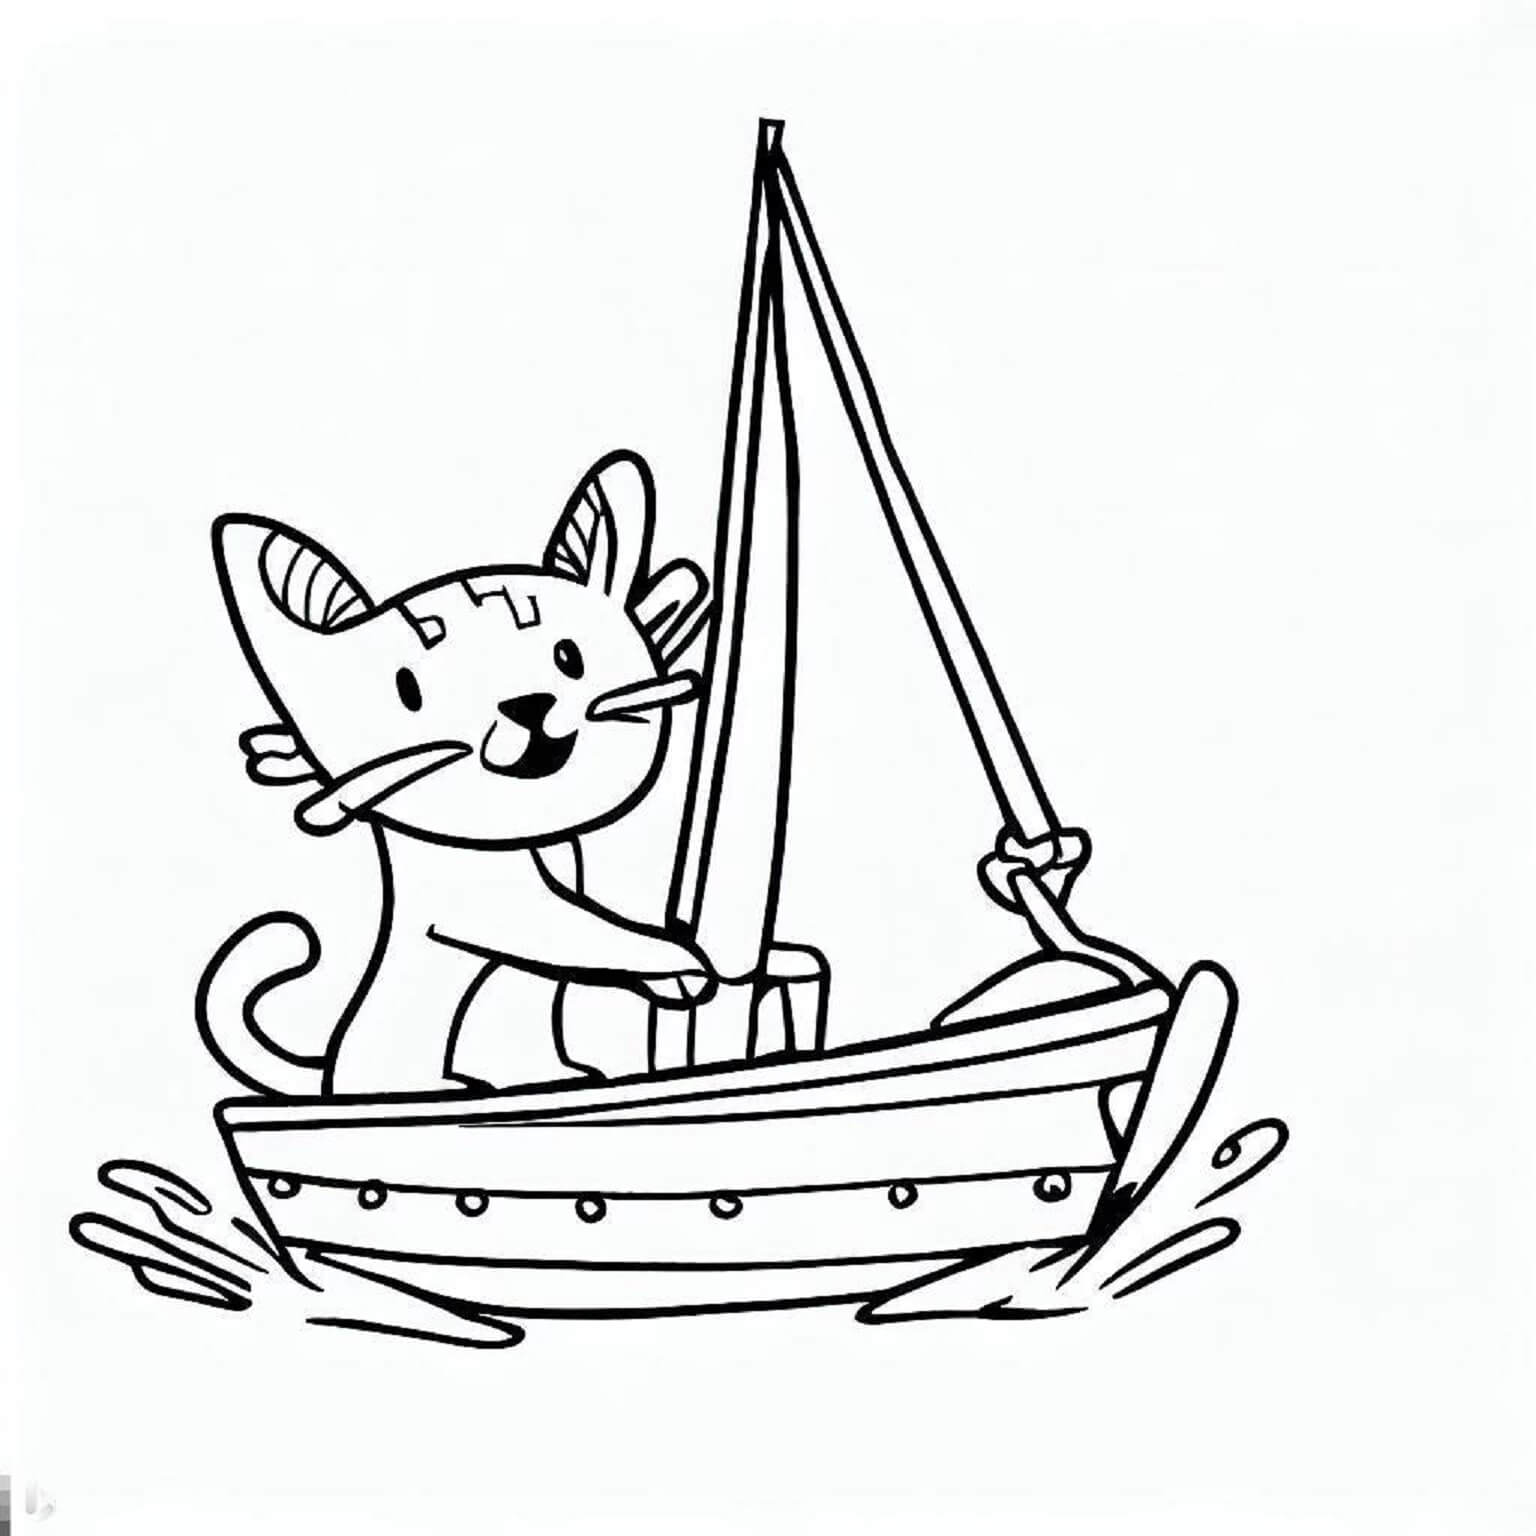 Gato Engraçado No Barco De Gato para colorir